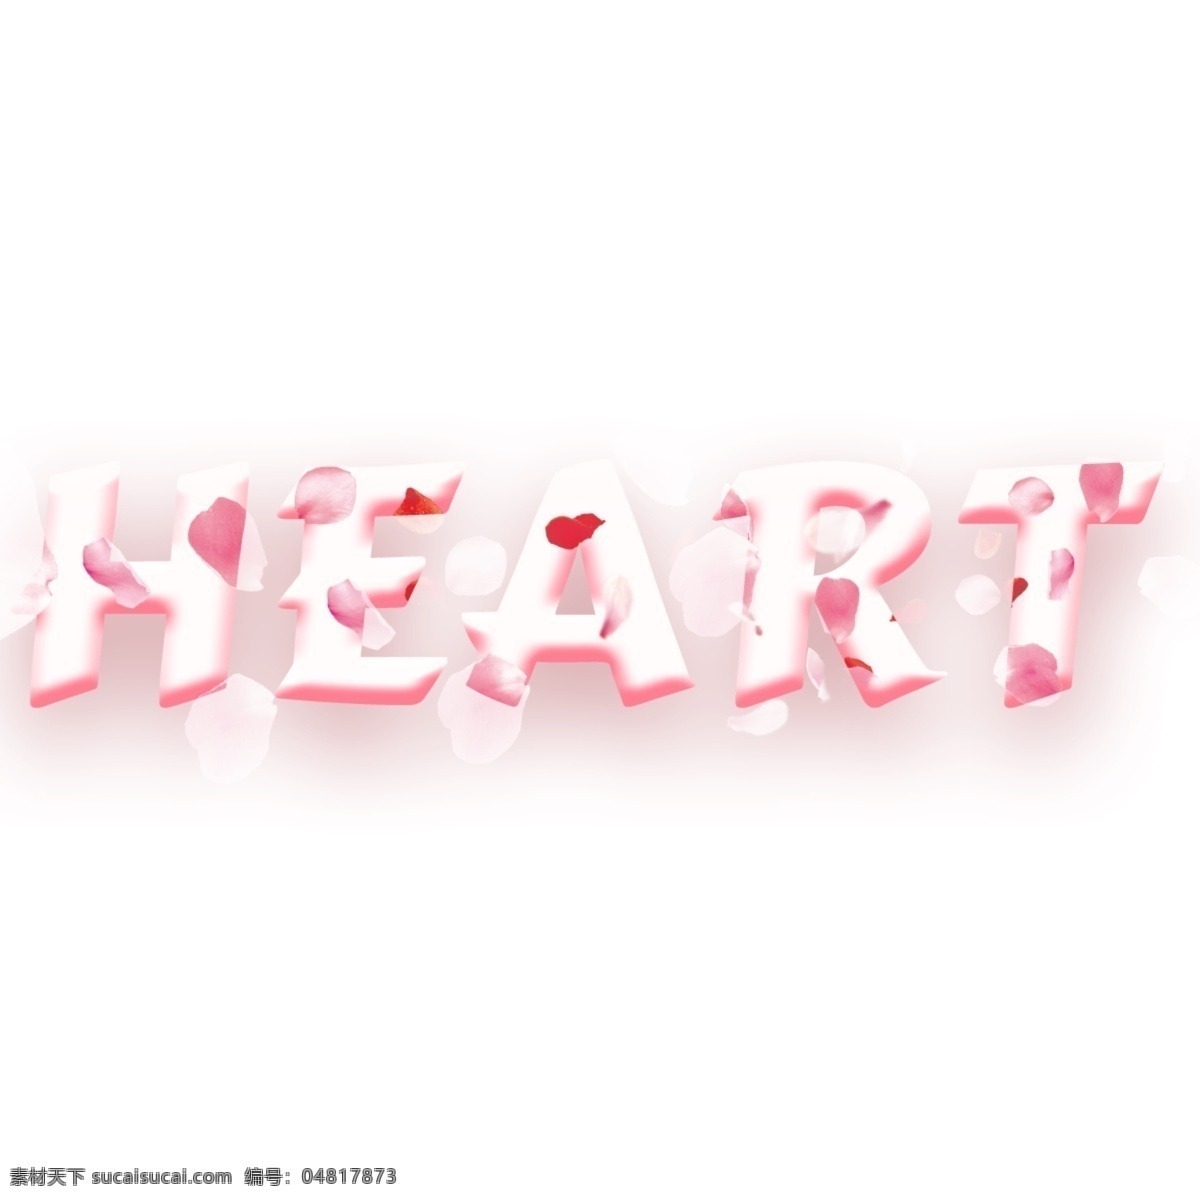 光 efffect 桃红色 花 心脏 字体 心 粉红色的花 光效 花瓣 背景 简单的字体 可编辑的字体 书法